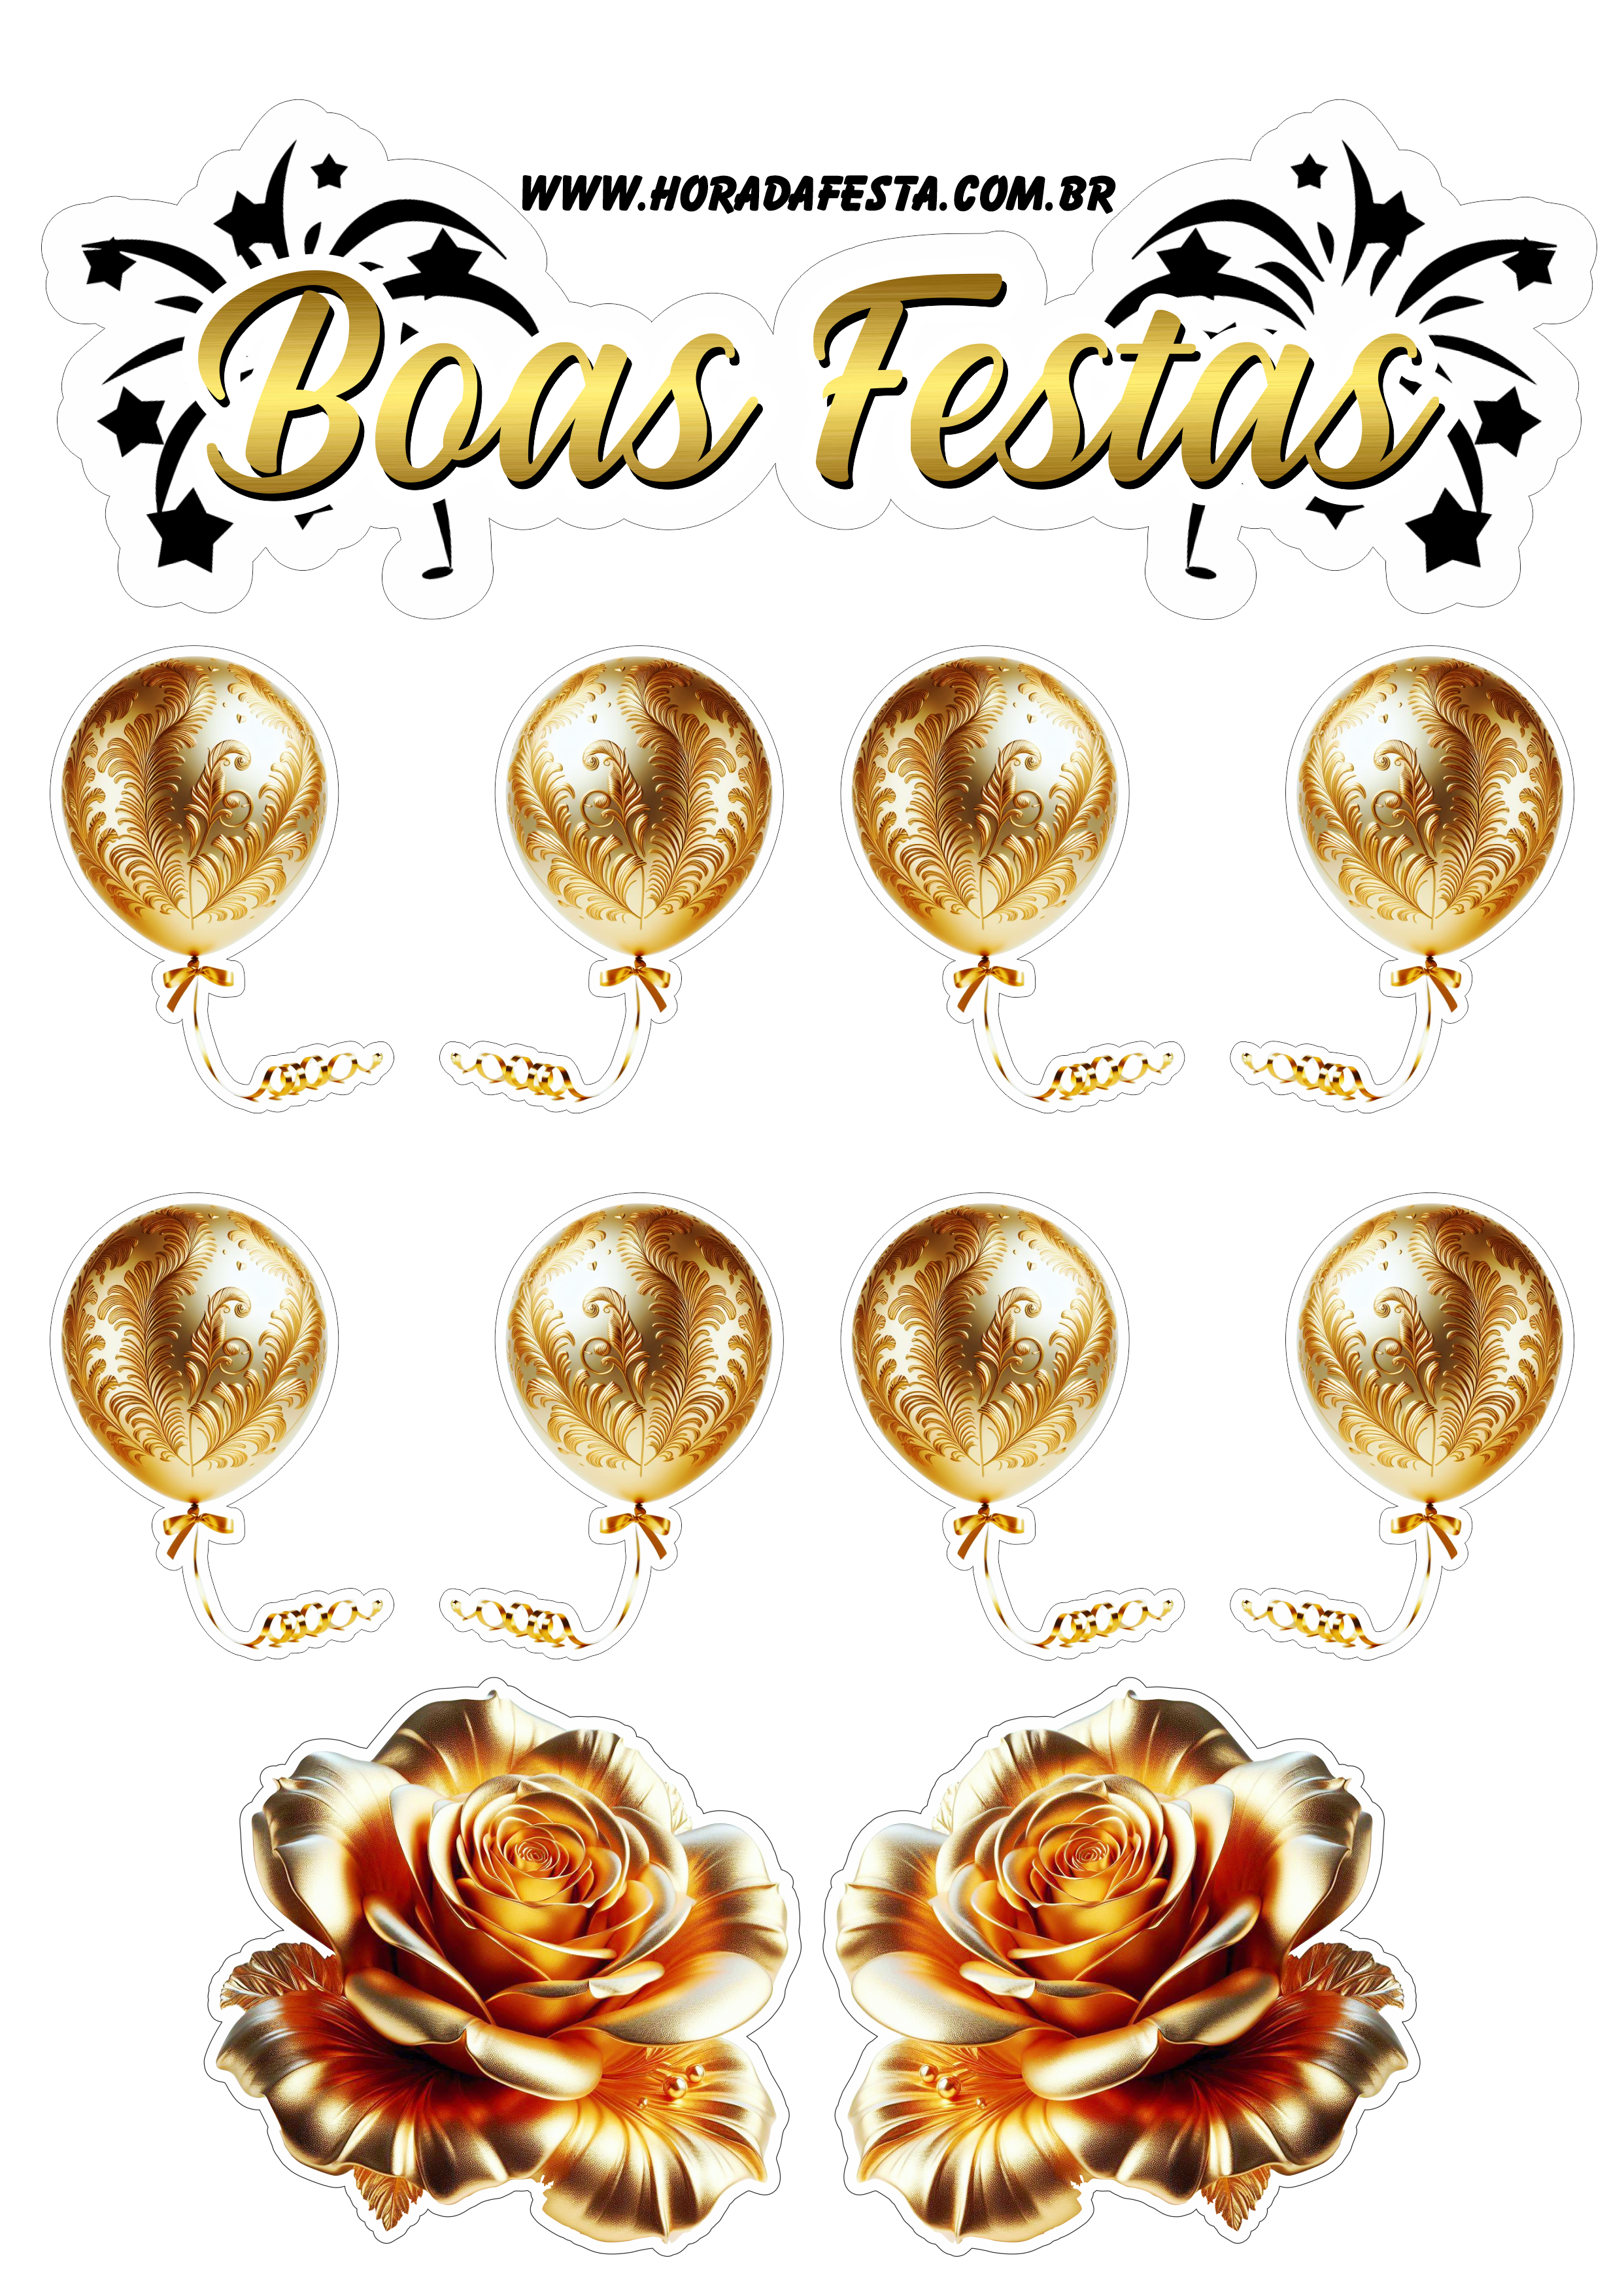 Boas festas topo de bolo para imprimir flores e balões dourados artigos de papelaria decoração personalizada renda extra png